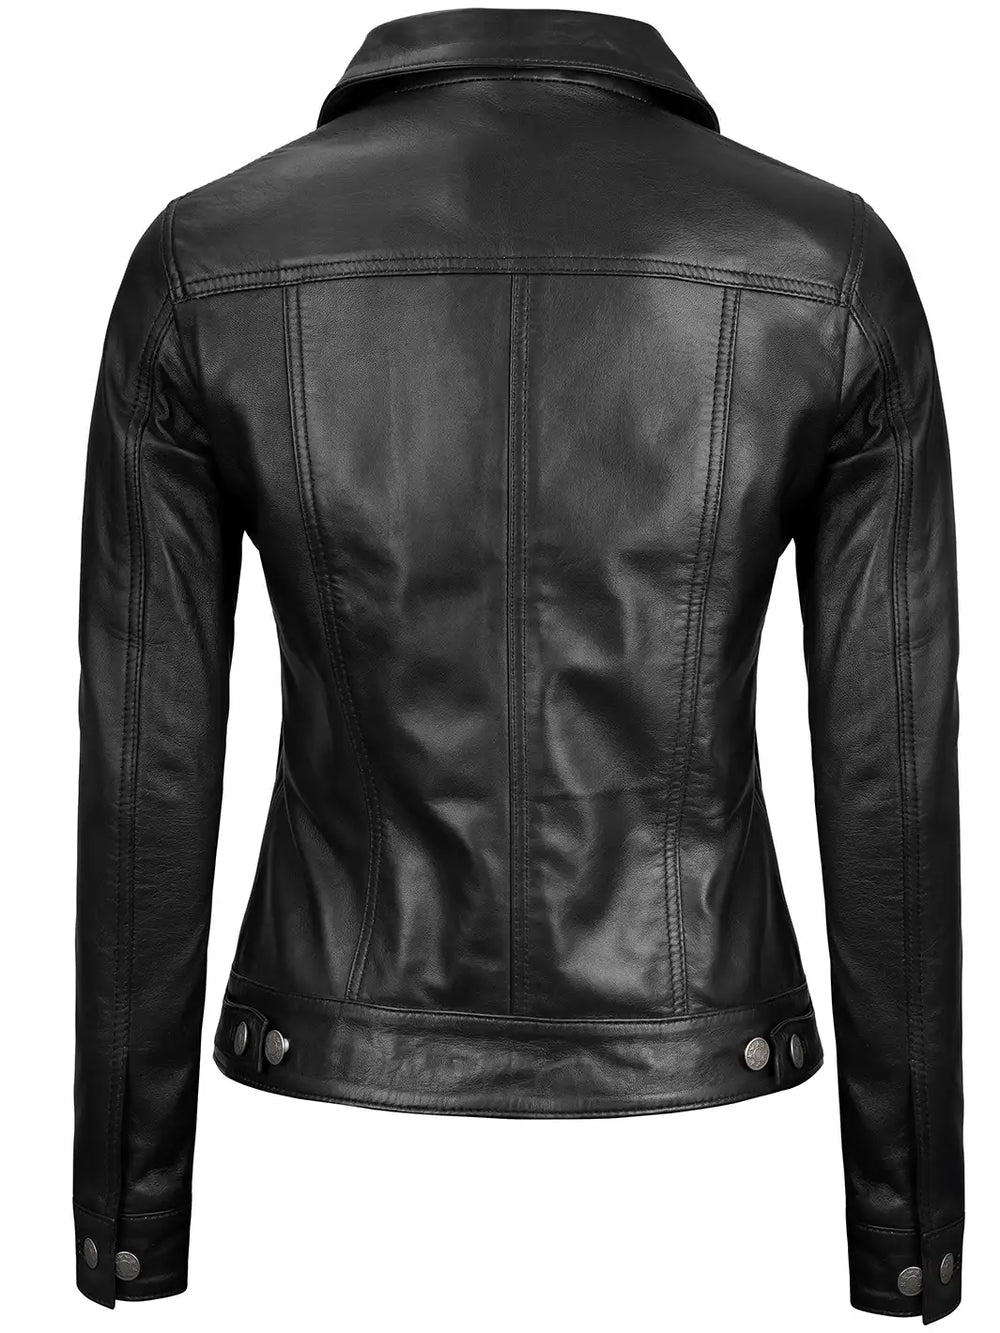 Trucker leather jacket for women